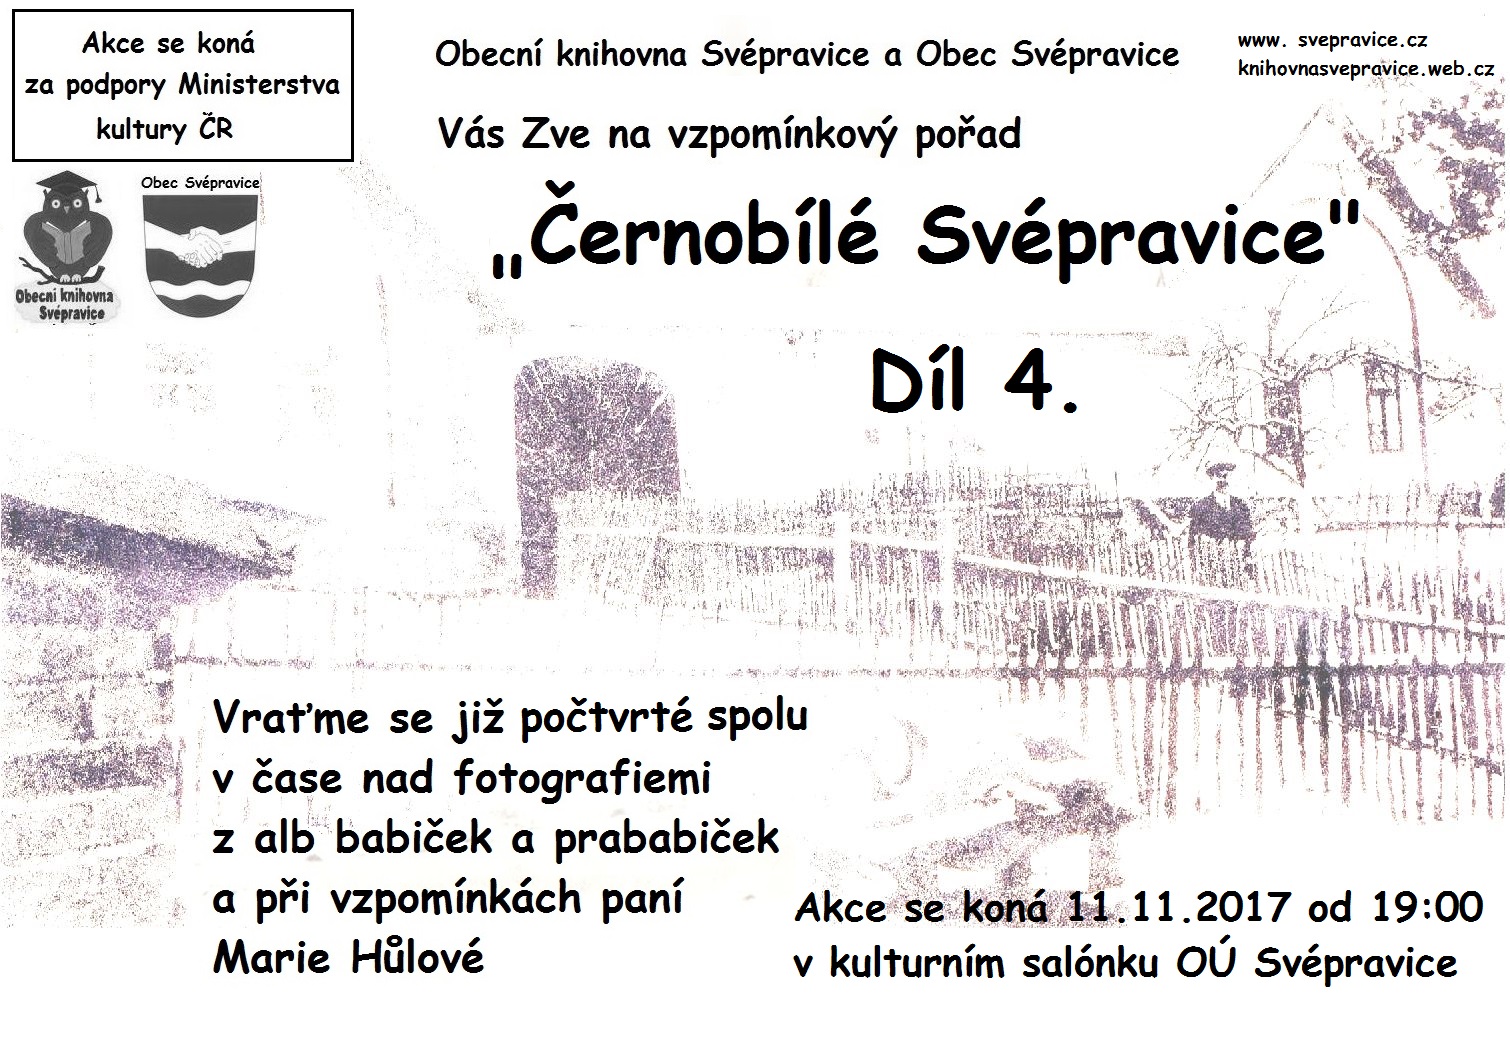 Pozvánka na vzpomínkový pořad do Svépravic